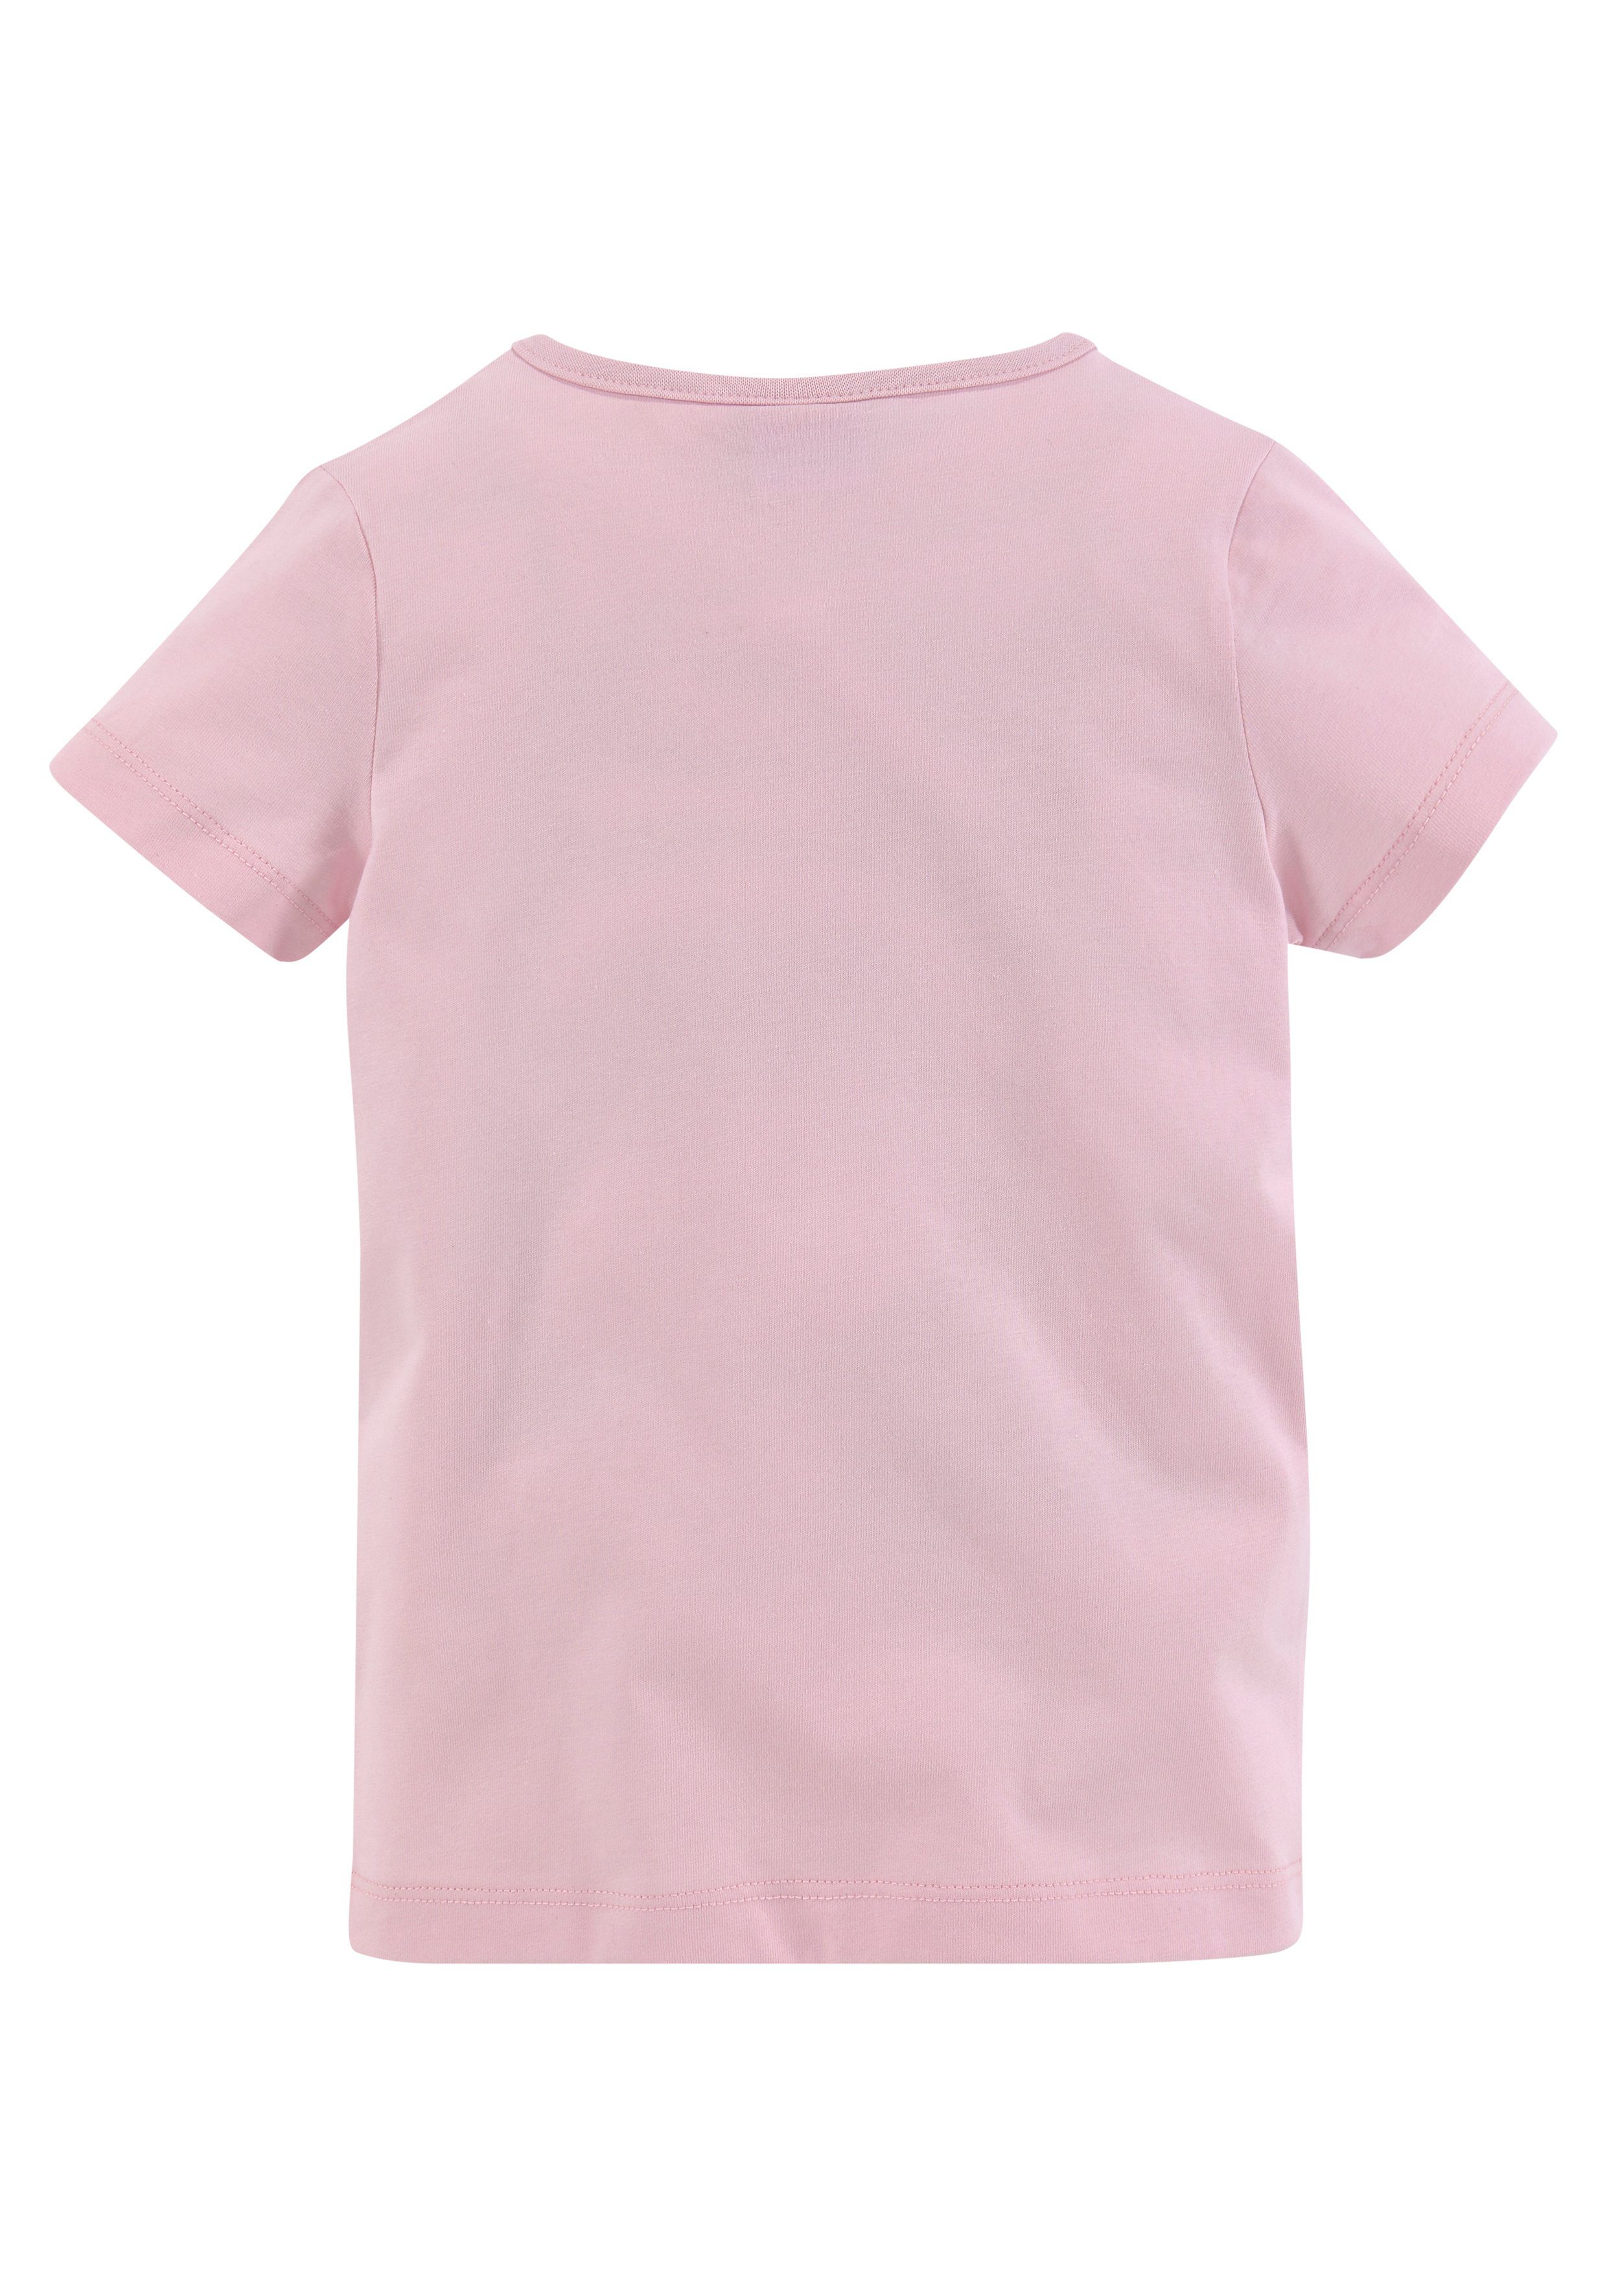 PATROL PAW rosa T-Shirt